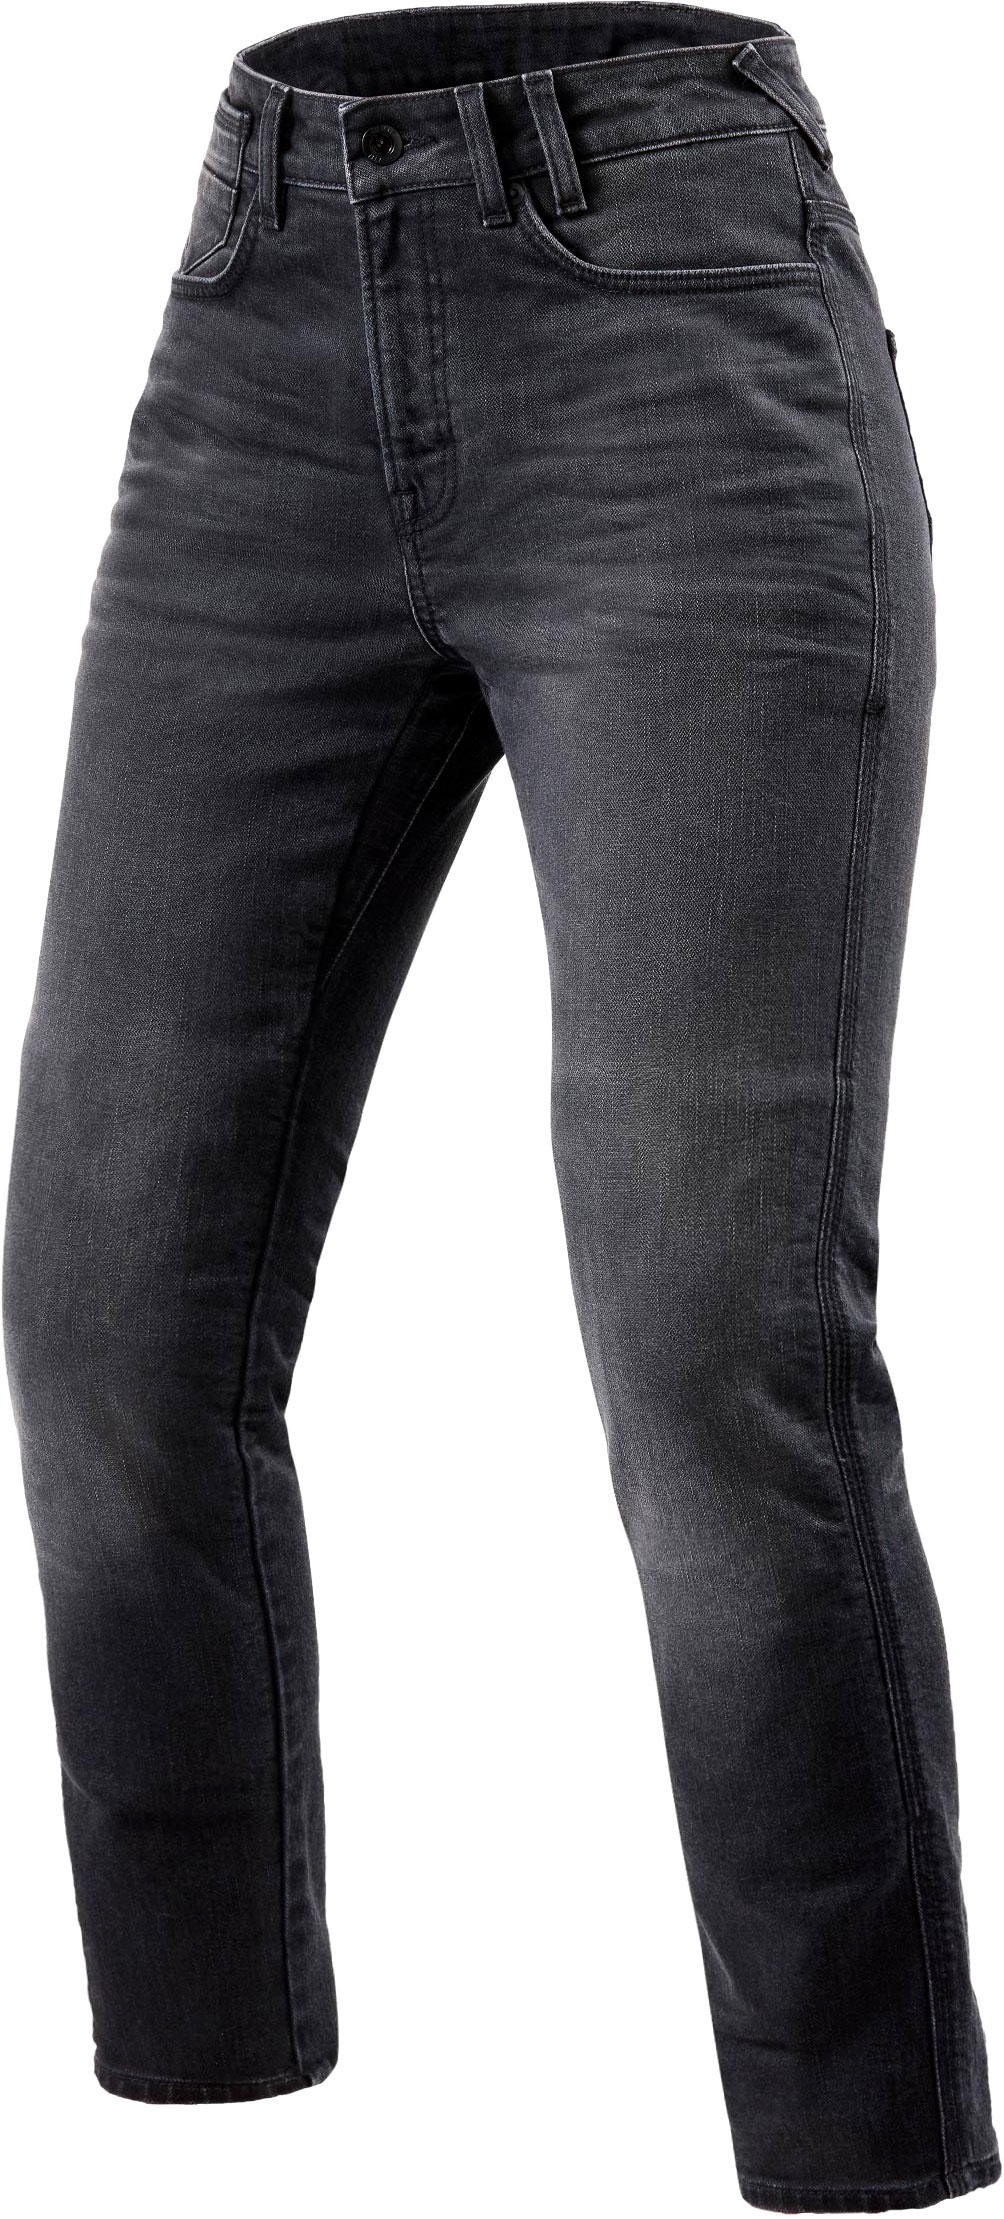 Revit Victoria 2, jeans femmes - Gris - W30/L30